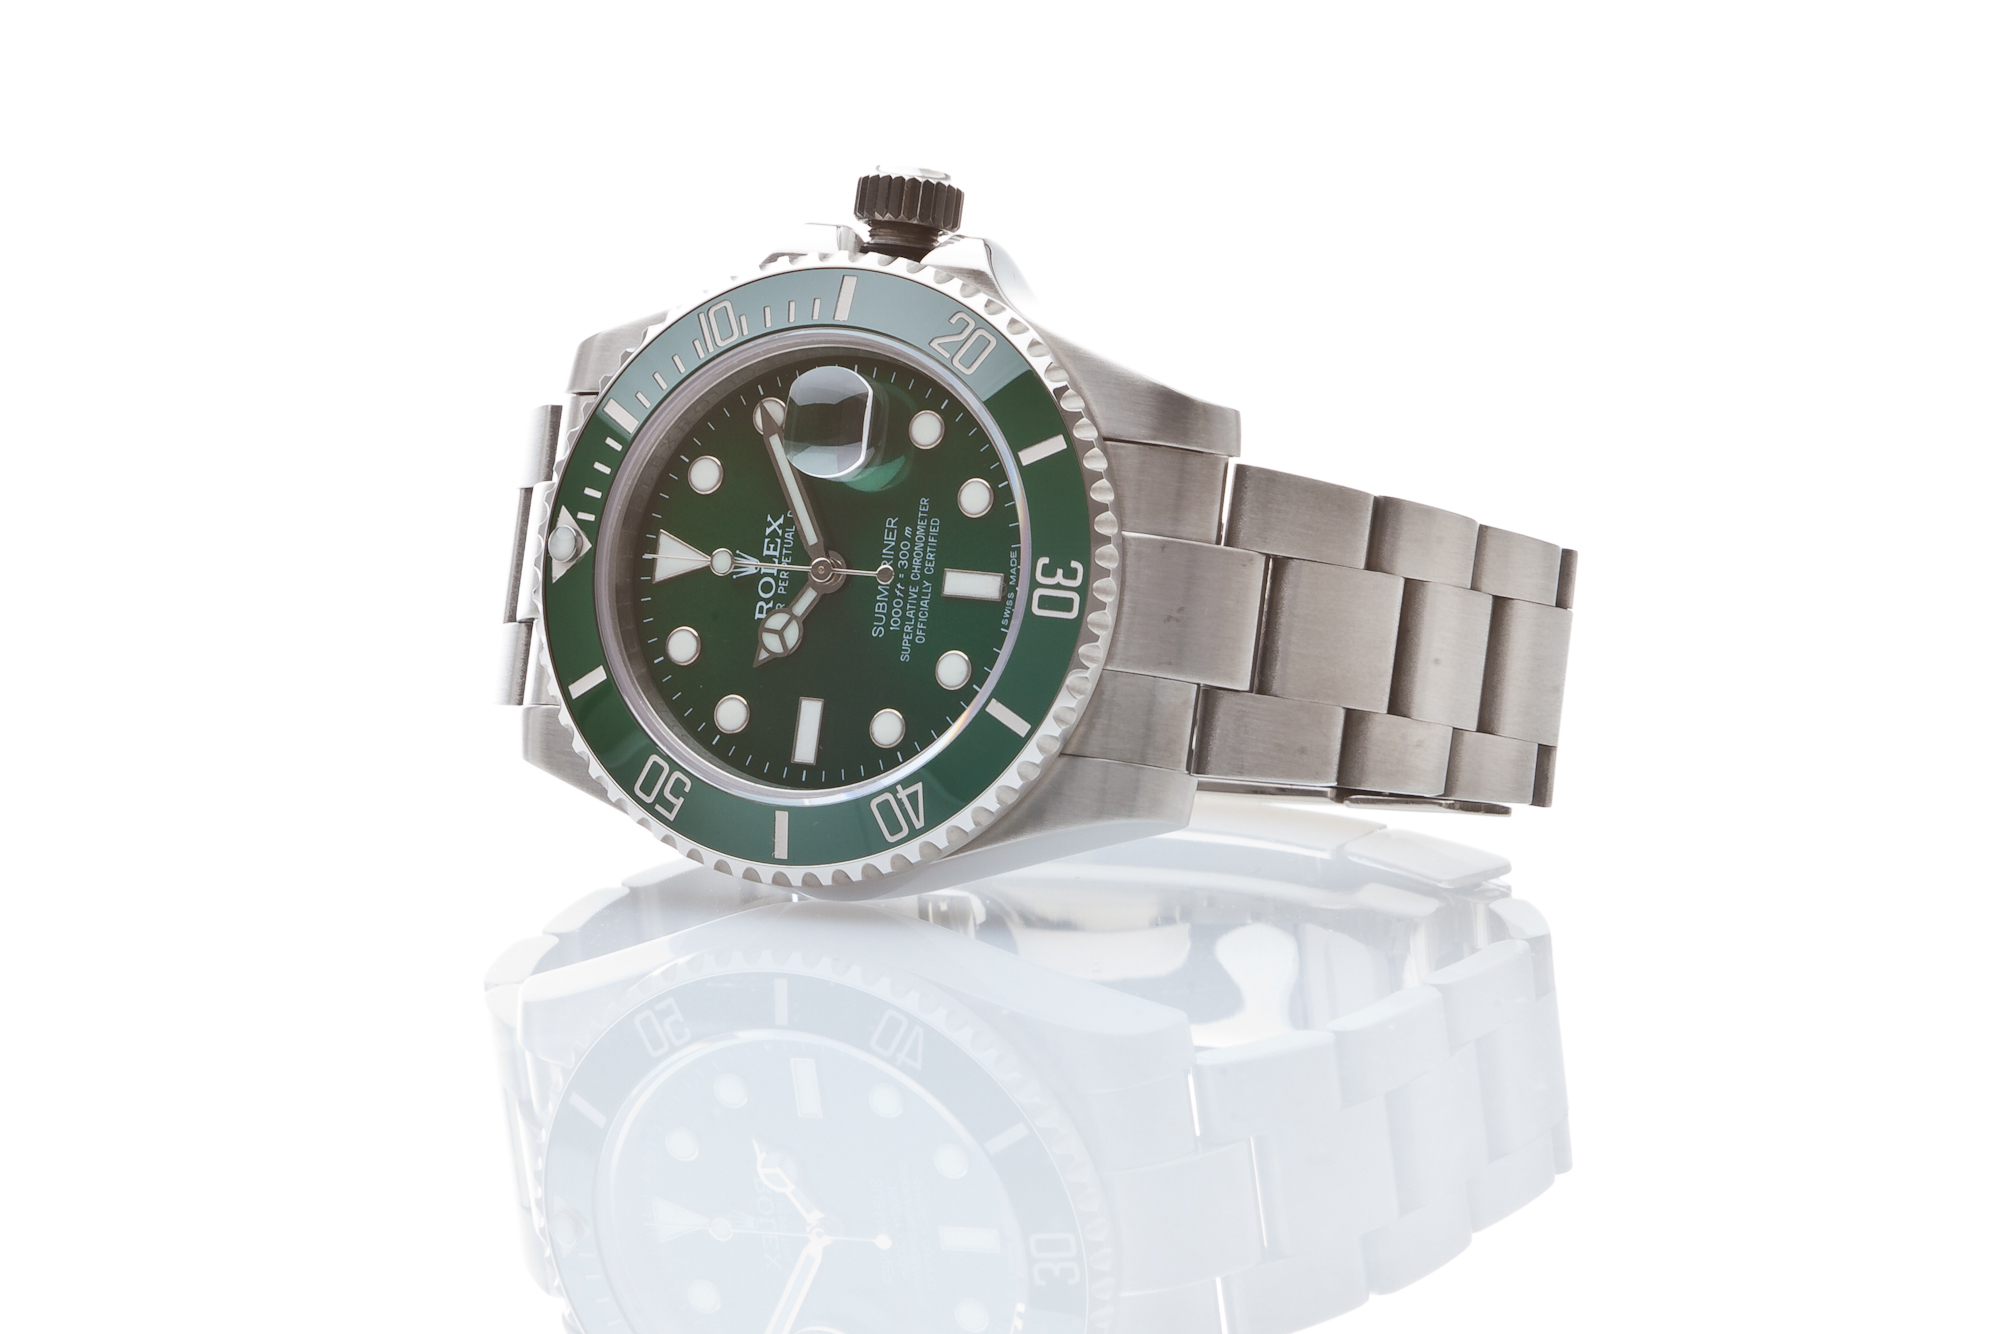 Productfotografie Rolex horloge met groene wijzerplaat